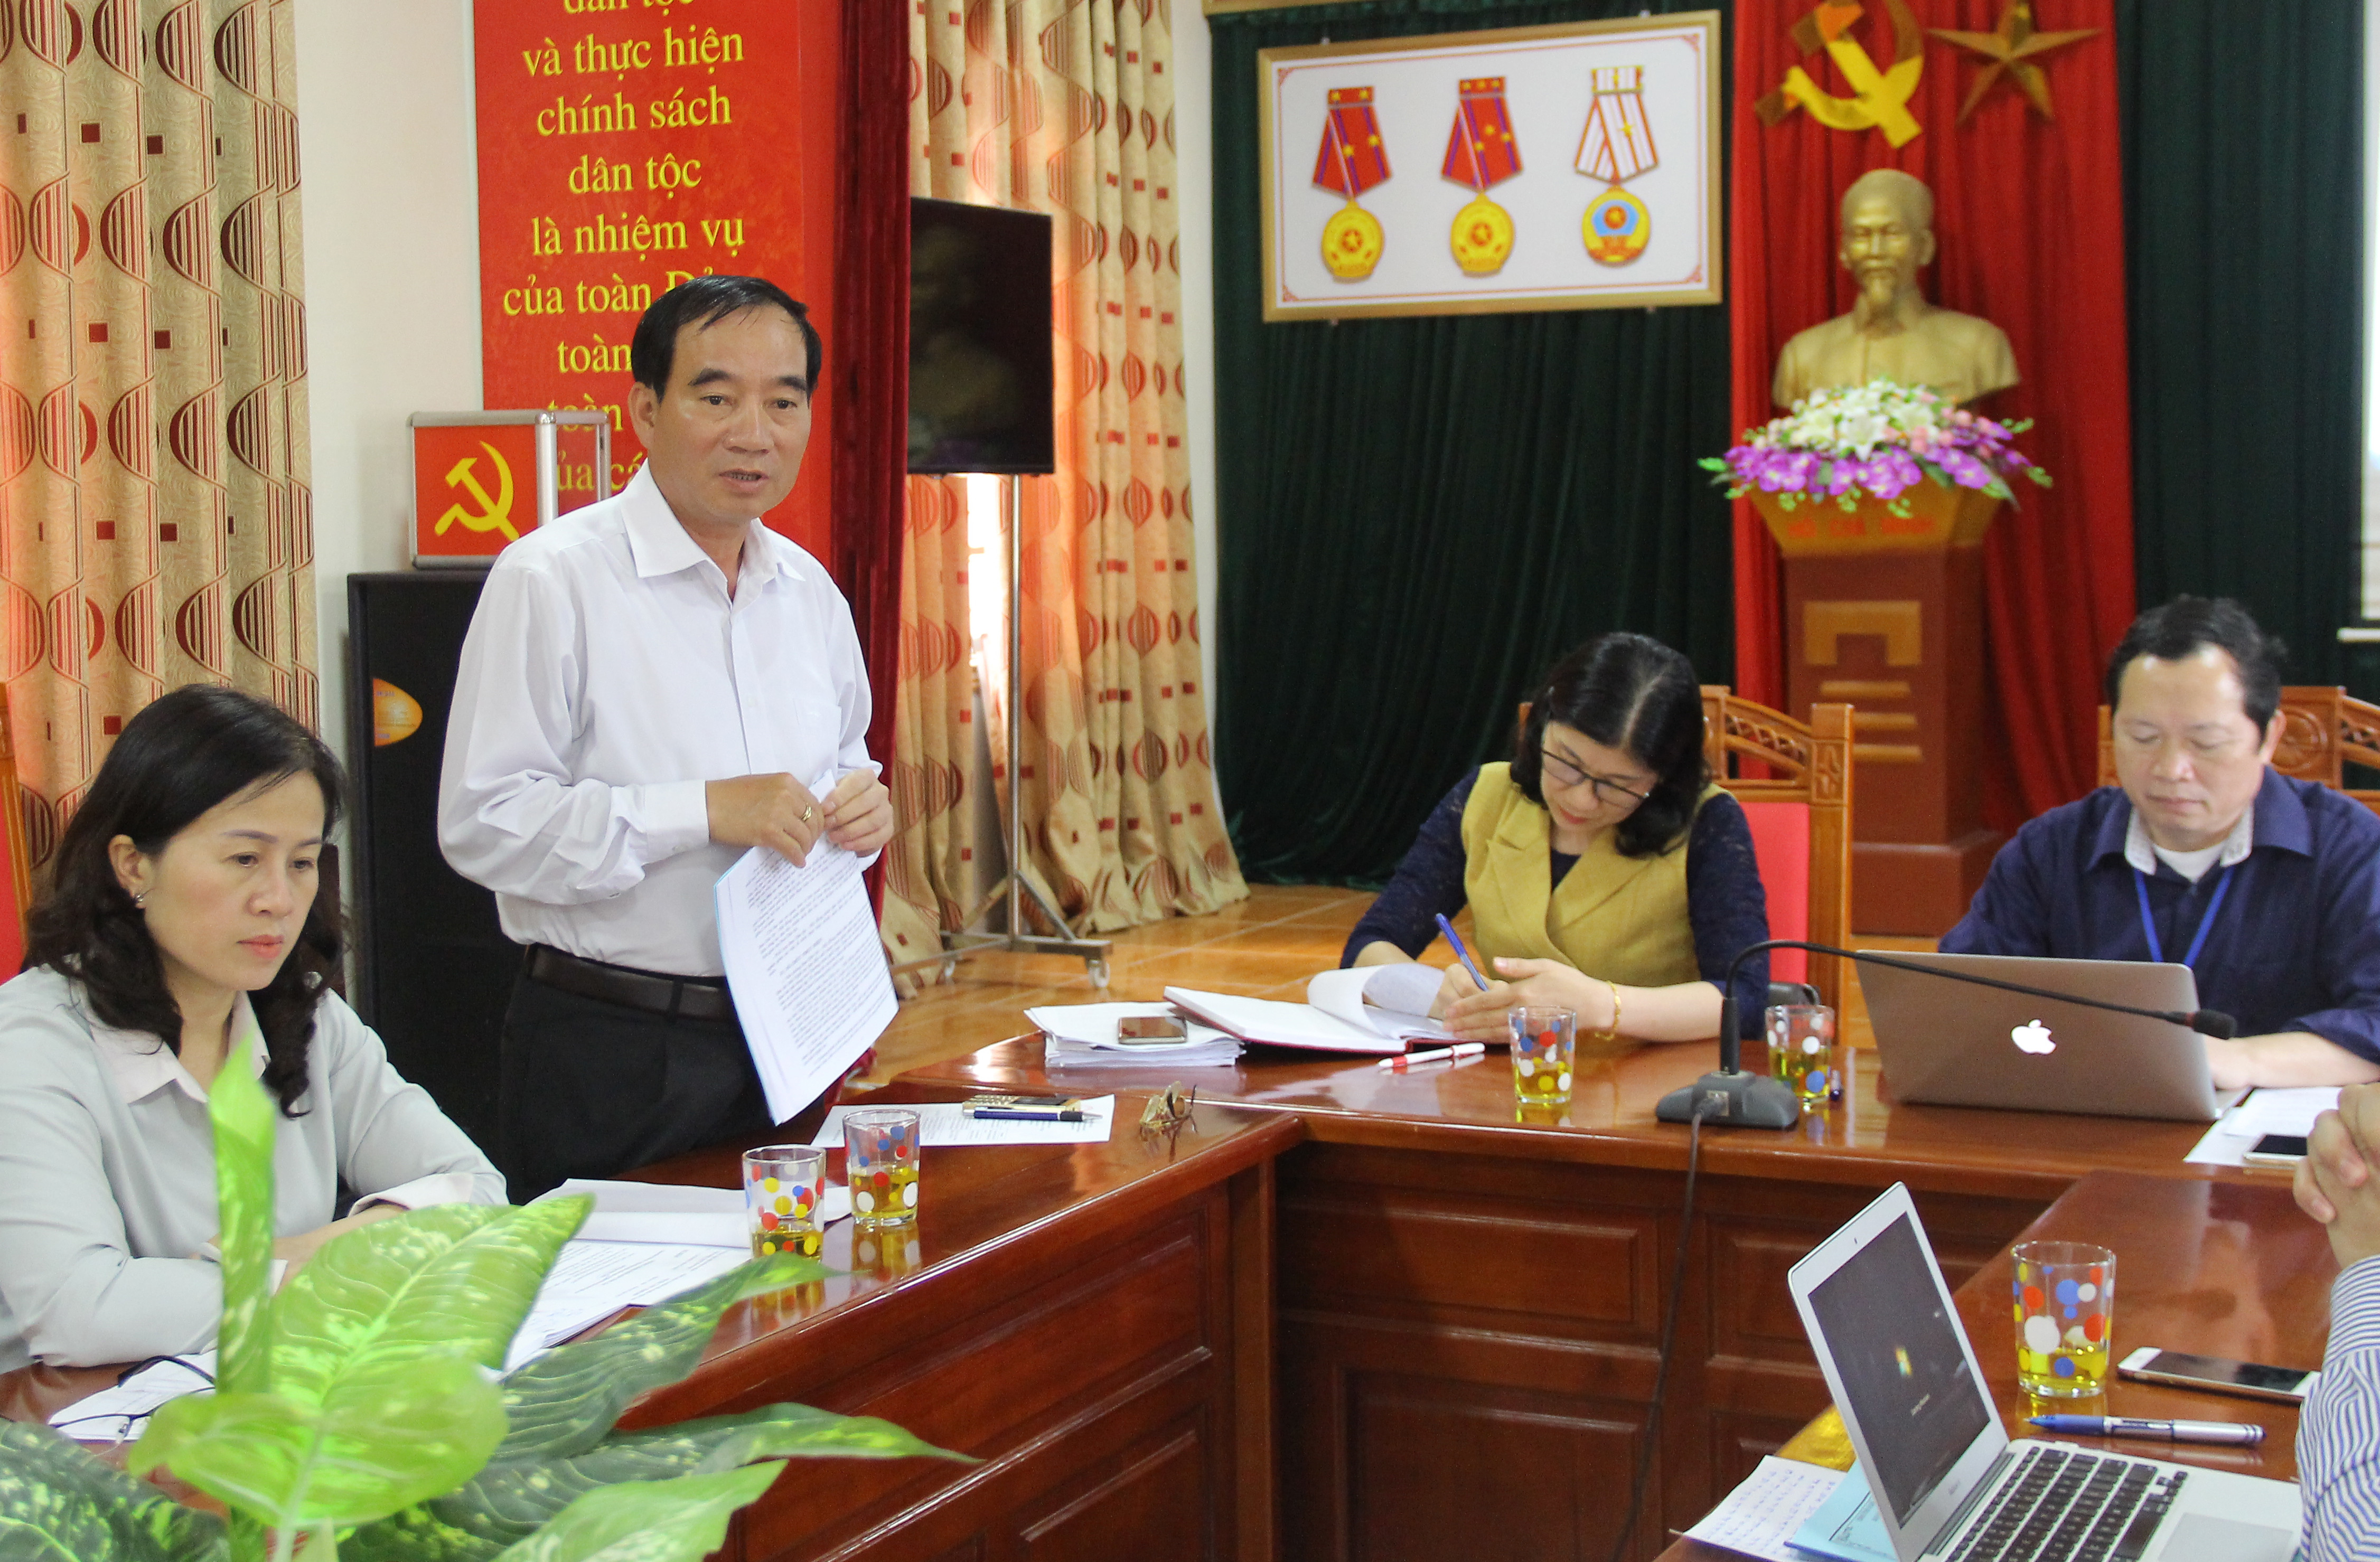 Phó Chủ tịch HĐND tỉnh Hoàng Viết Đường đề nghị cần phối hợp tốt hơn trong việc giải quyết đơn thư và kiến nghị của cử tri